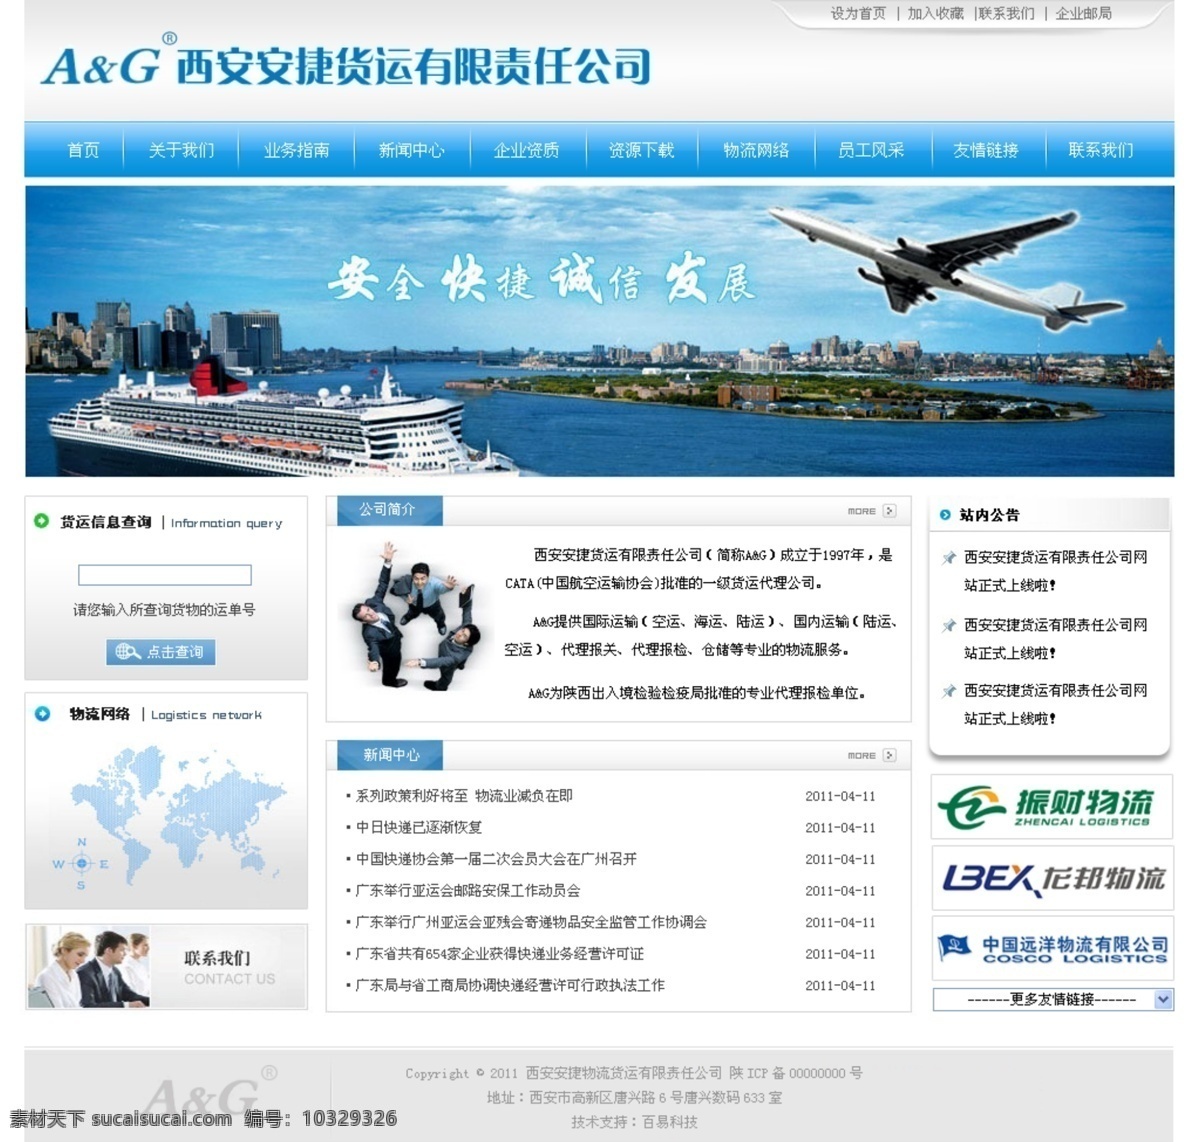 物流 网站 飞机 人物 网页模板 源文件 中文模版 物流网站 货运网站 psd源文件